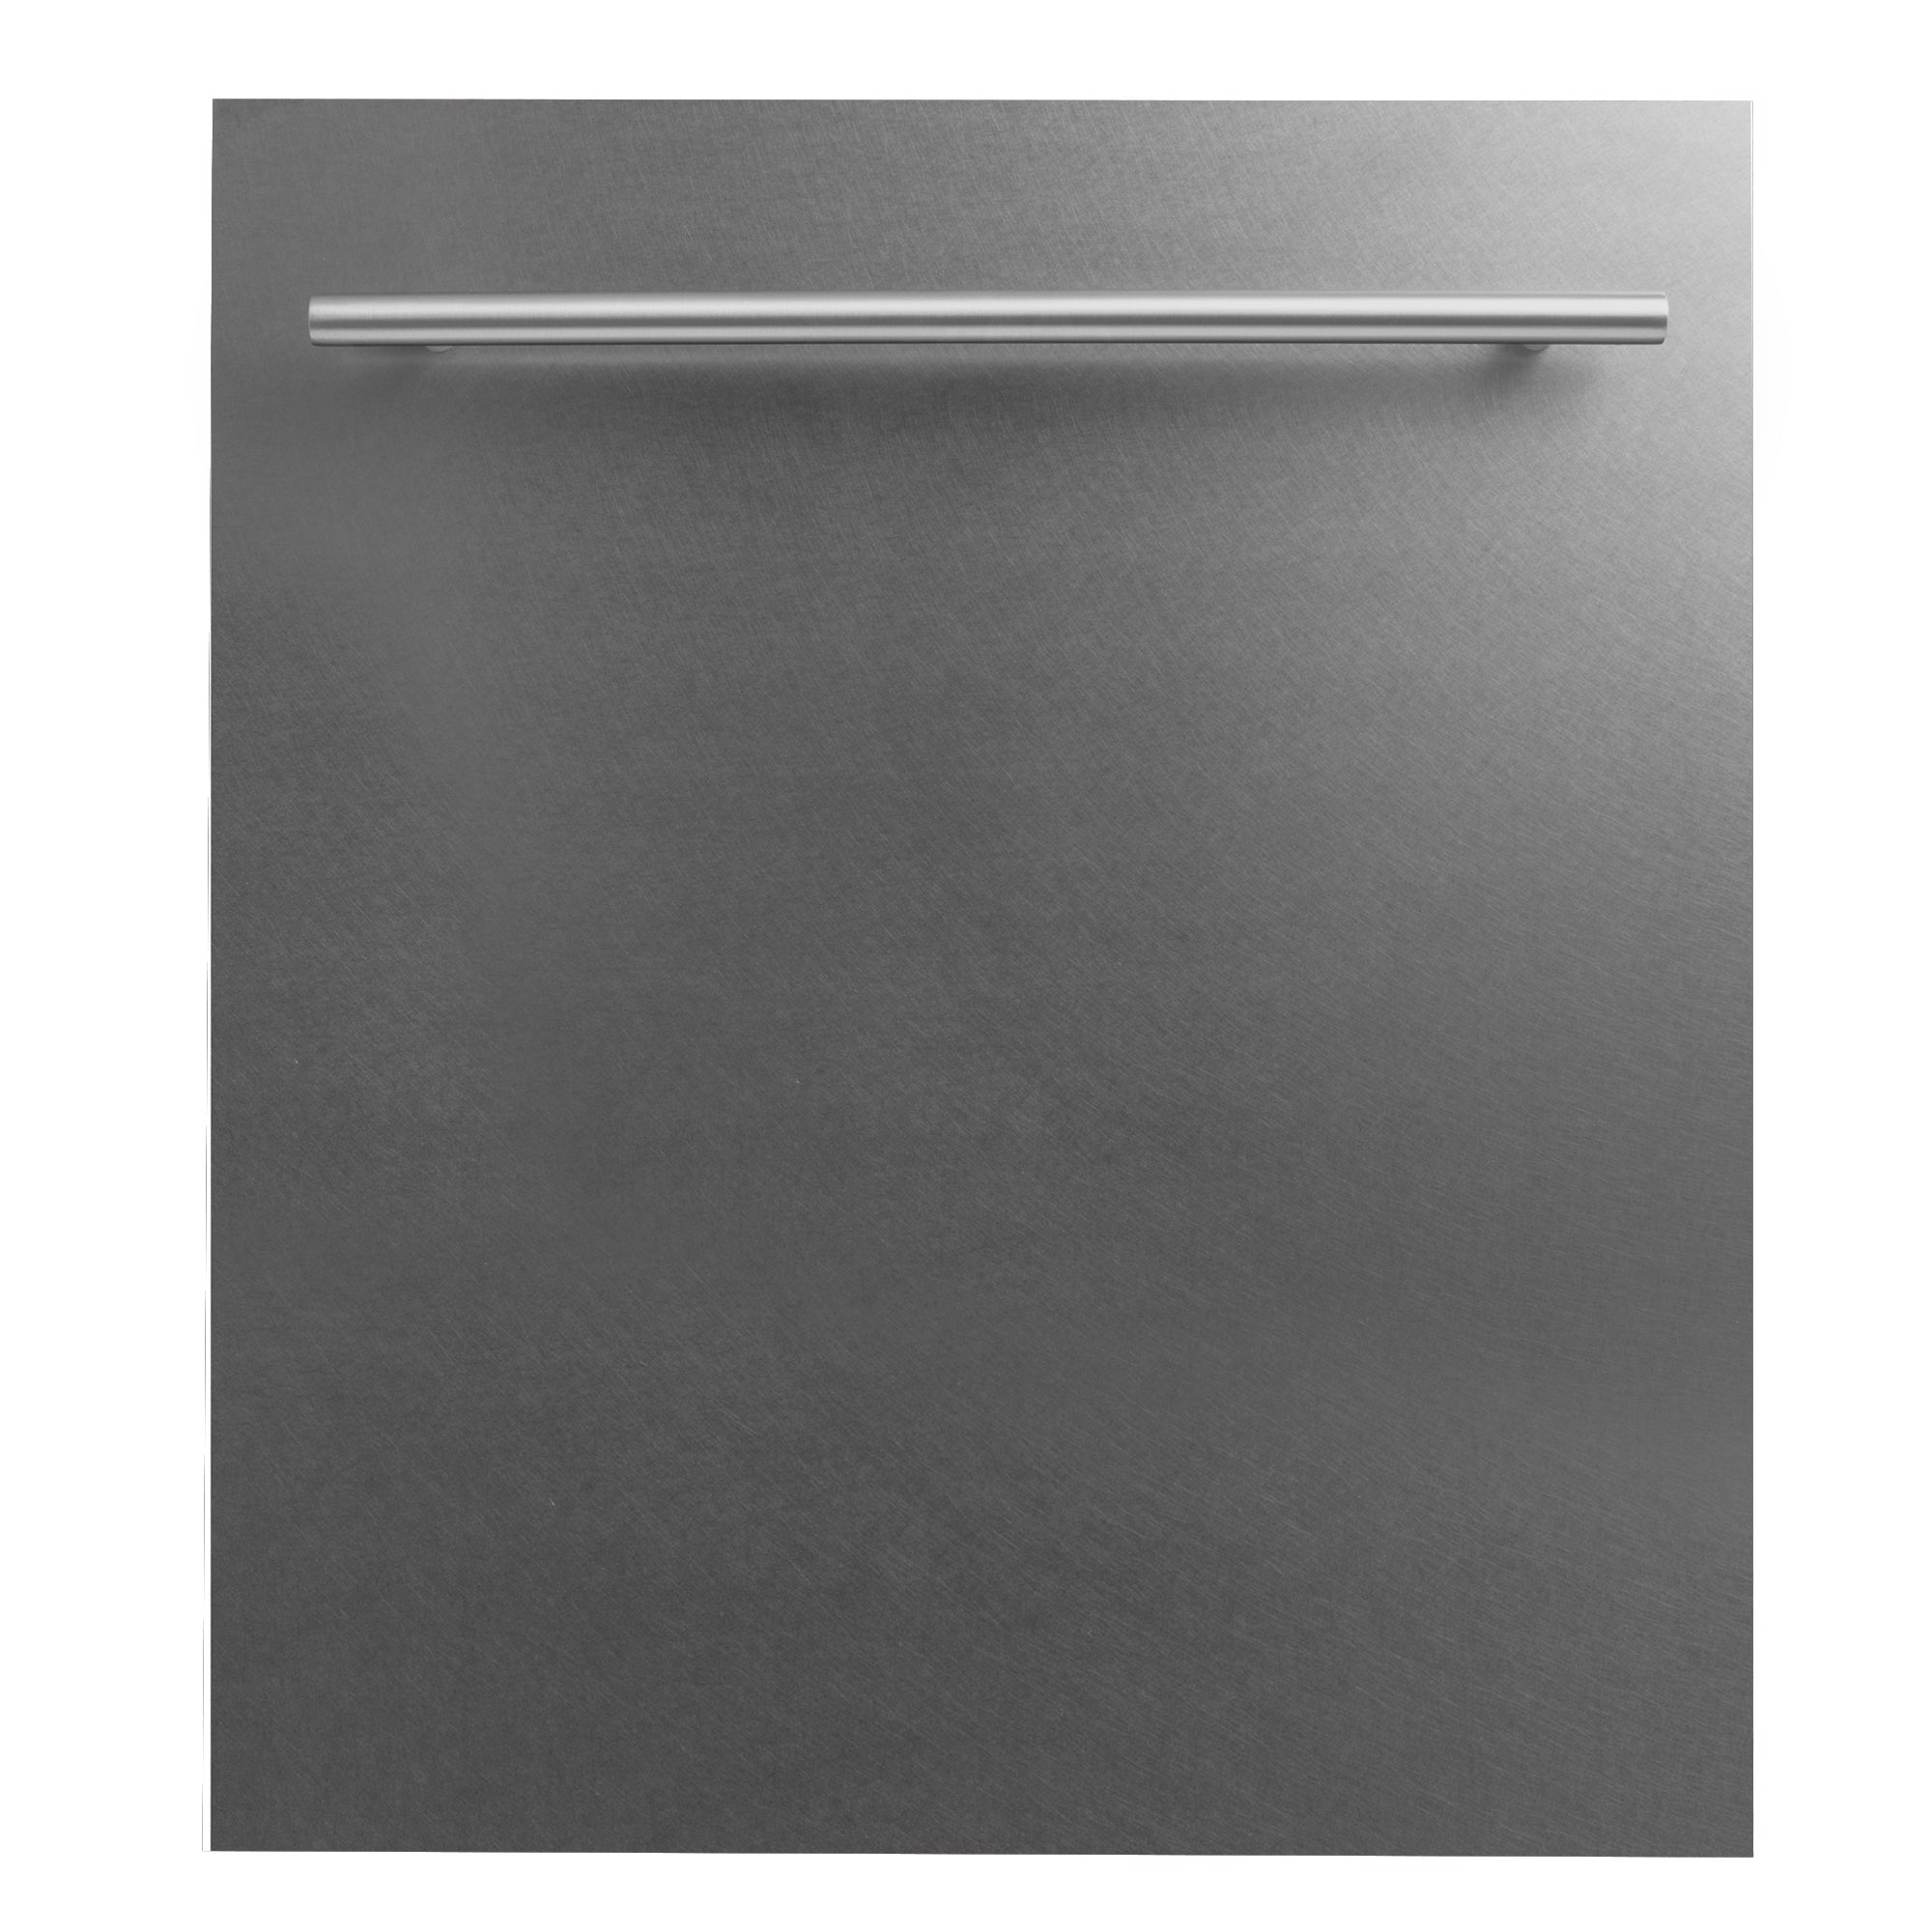 ZLINE 18" Dishwasher Panel in Fingerprint Resistant Finish with Modern Handle (DP-SN-18)